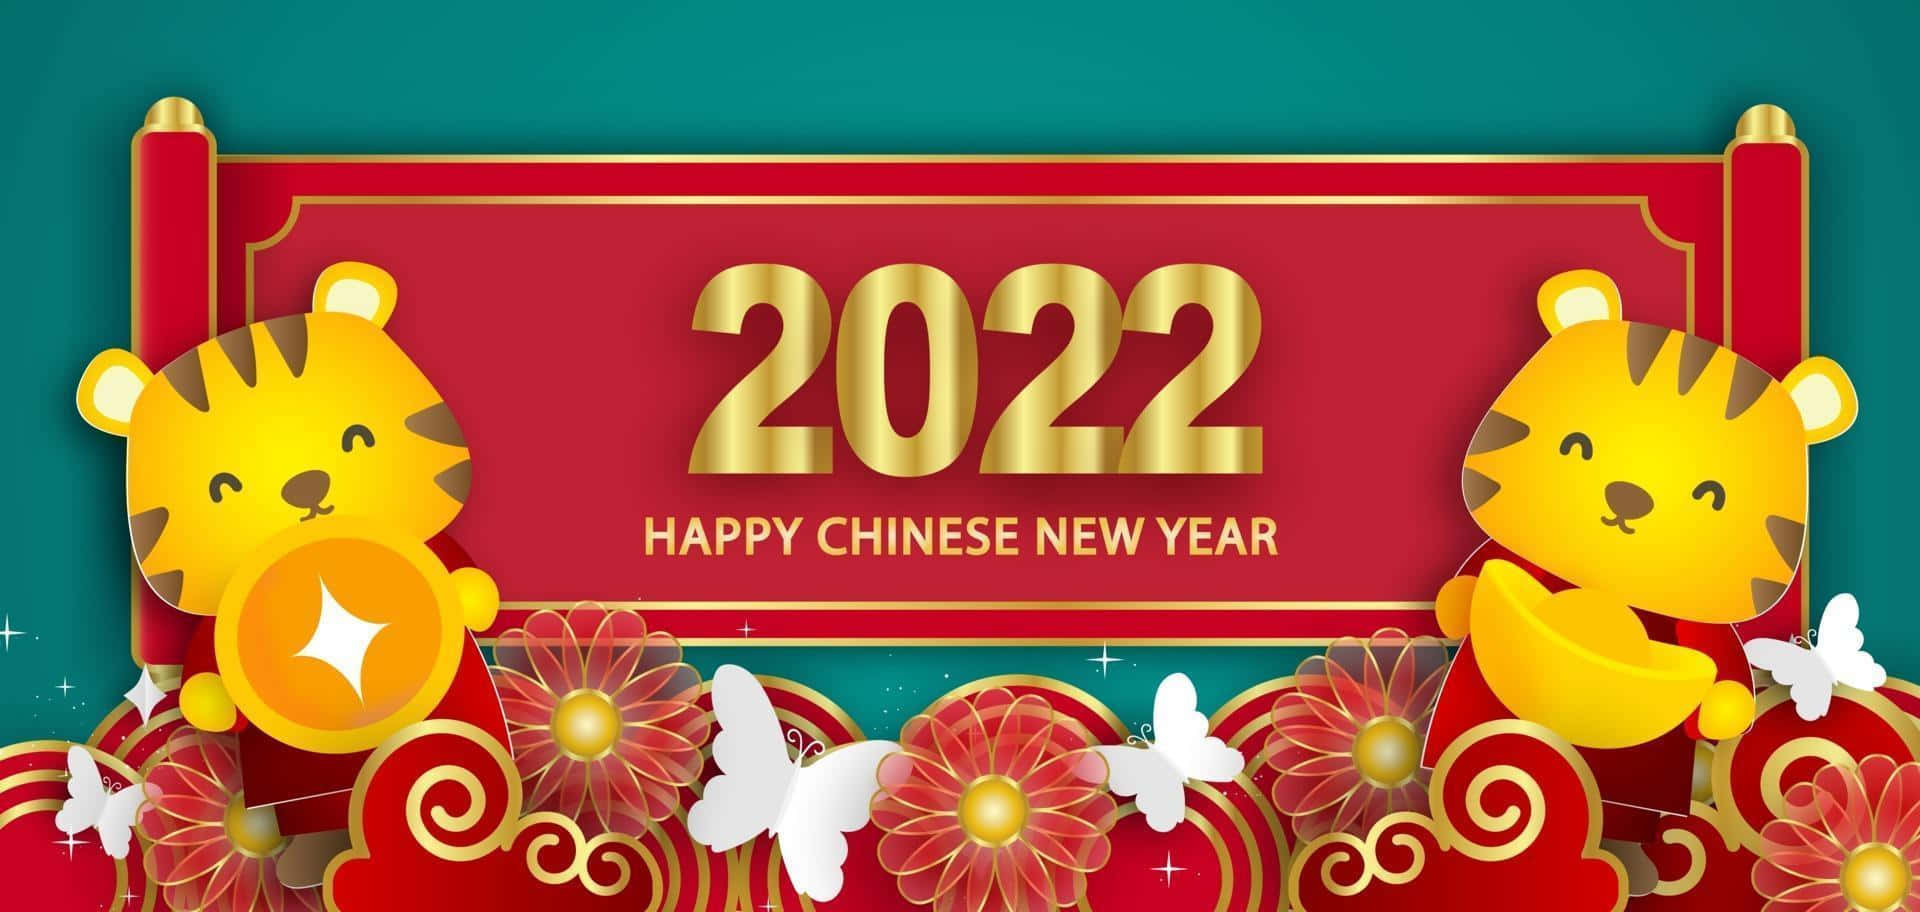 Ledecorazioni Del Capodanno Cinese Vivono Mentre Si Celebra Il Capodanno Cinese 2022.